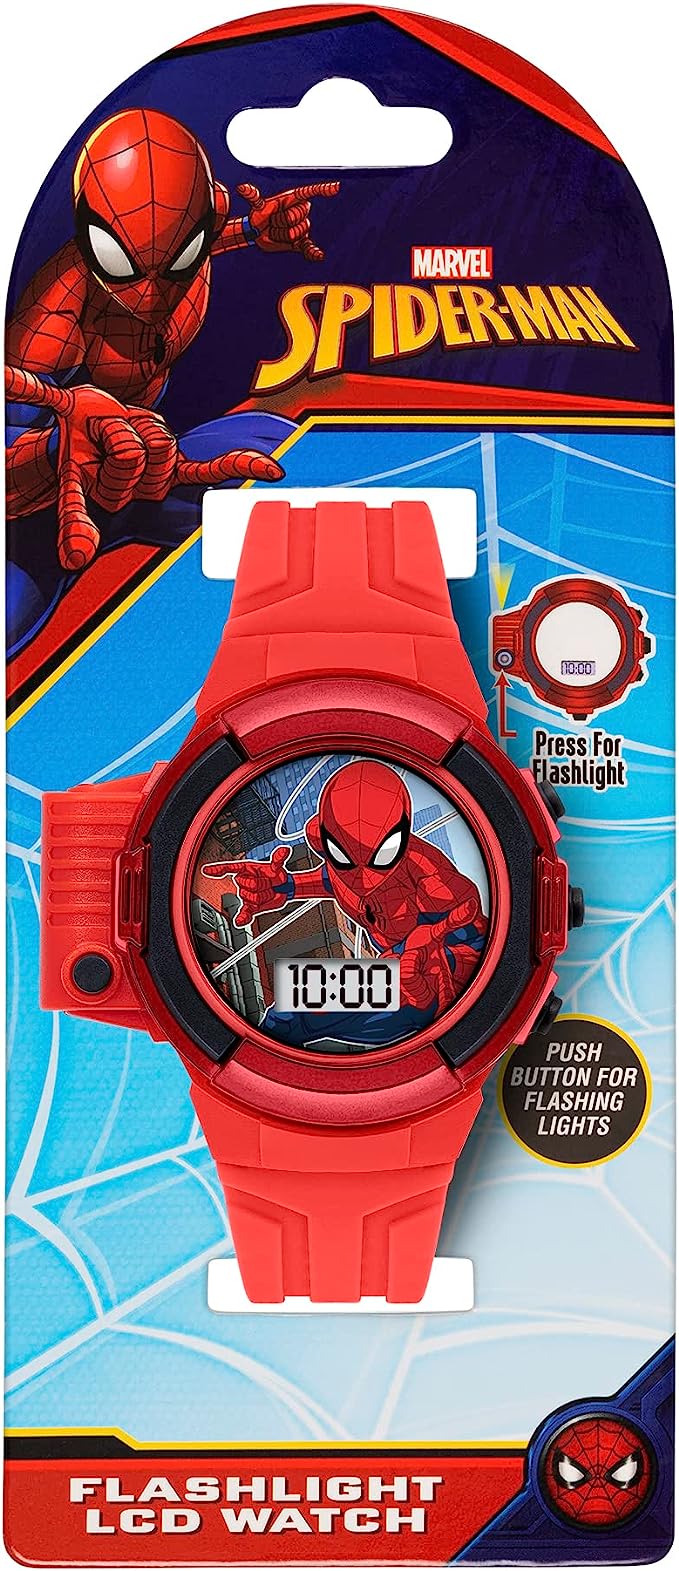 Spiderman Flashlight Watch